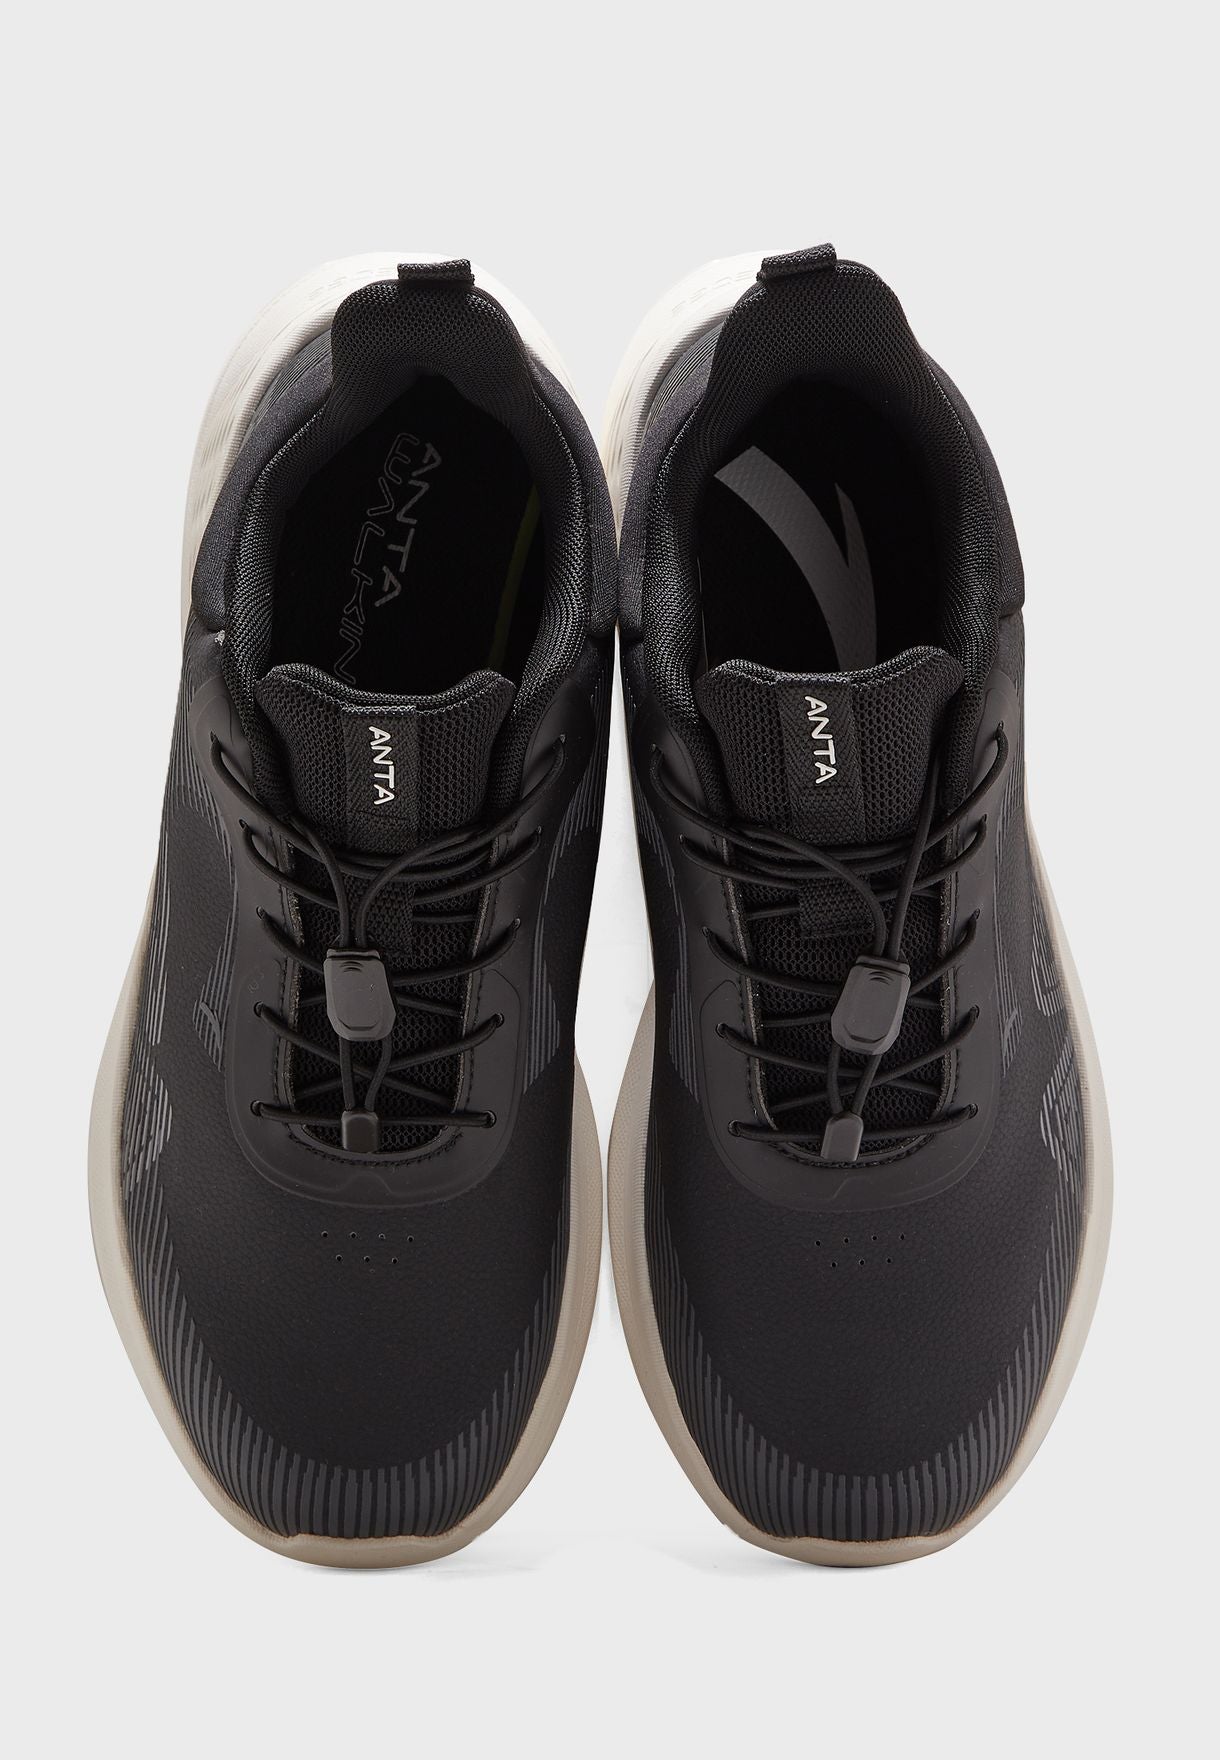 IMPORTED SHOES - ANTA Soft Walking Shoes, Unisex , Size-8